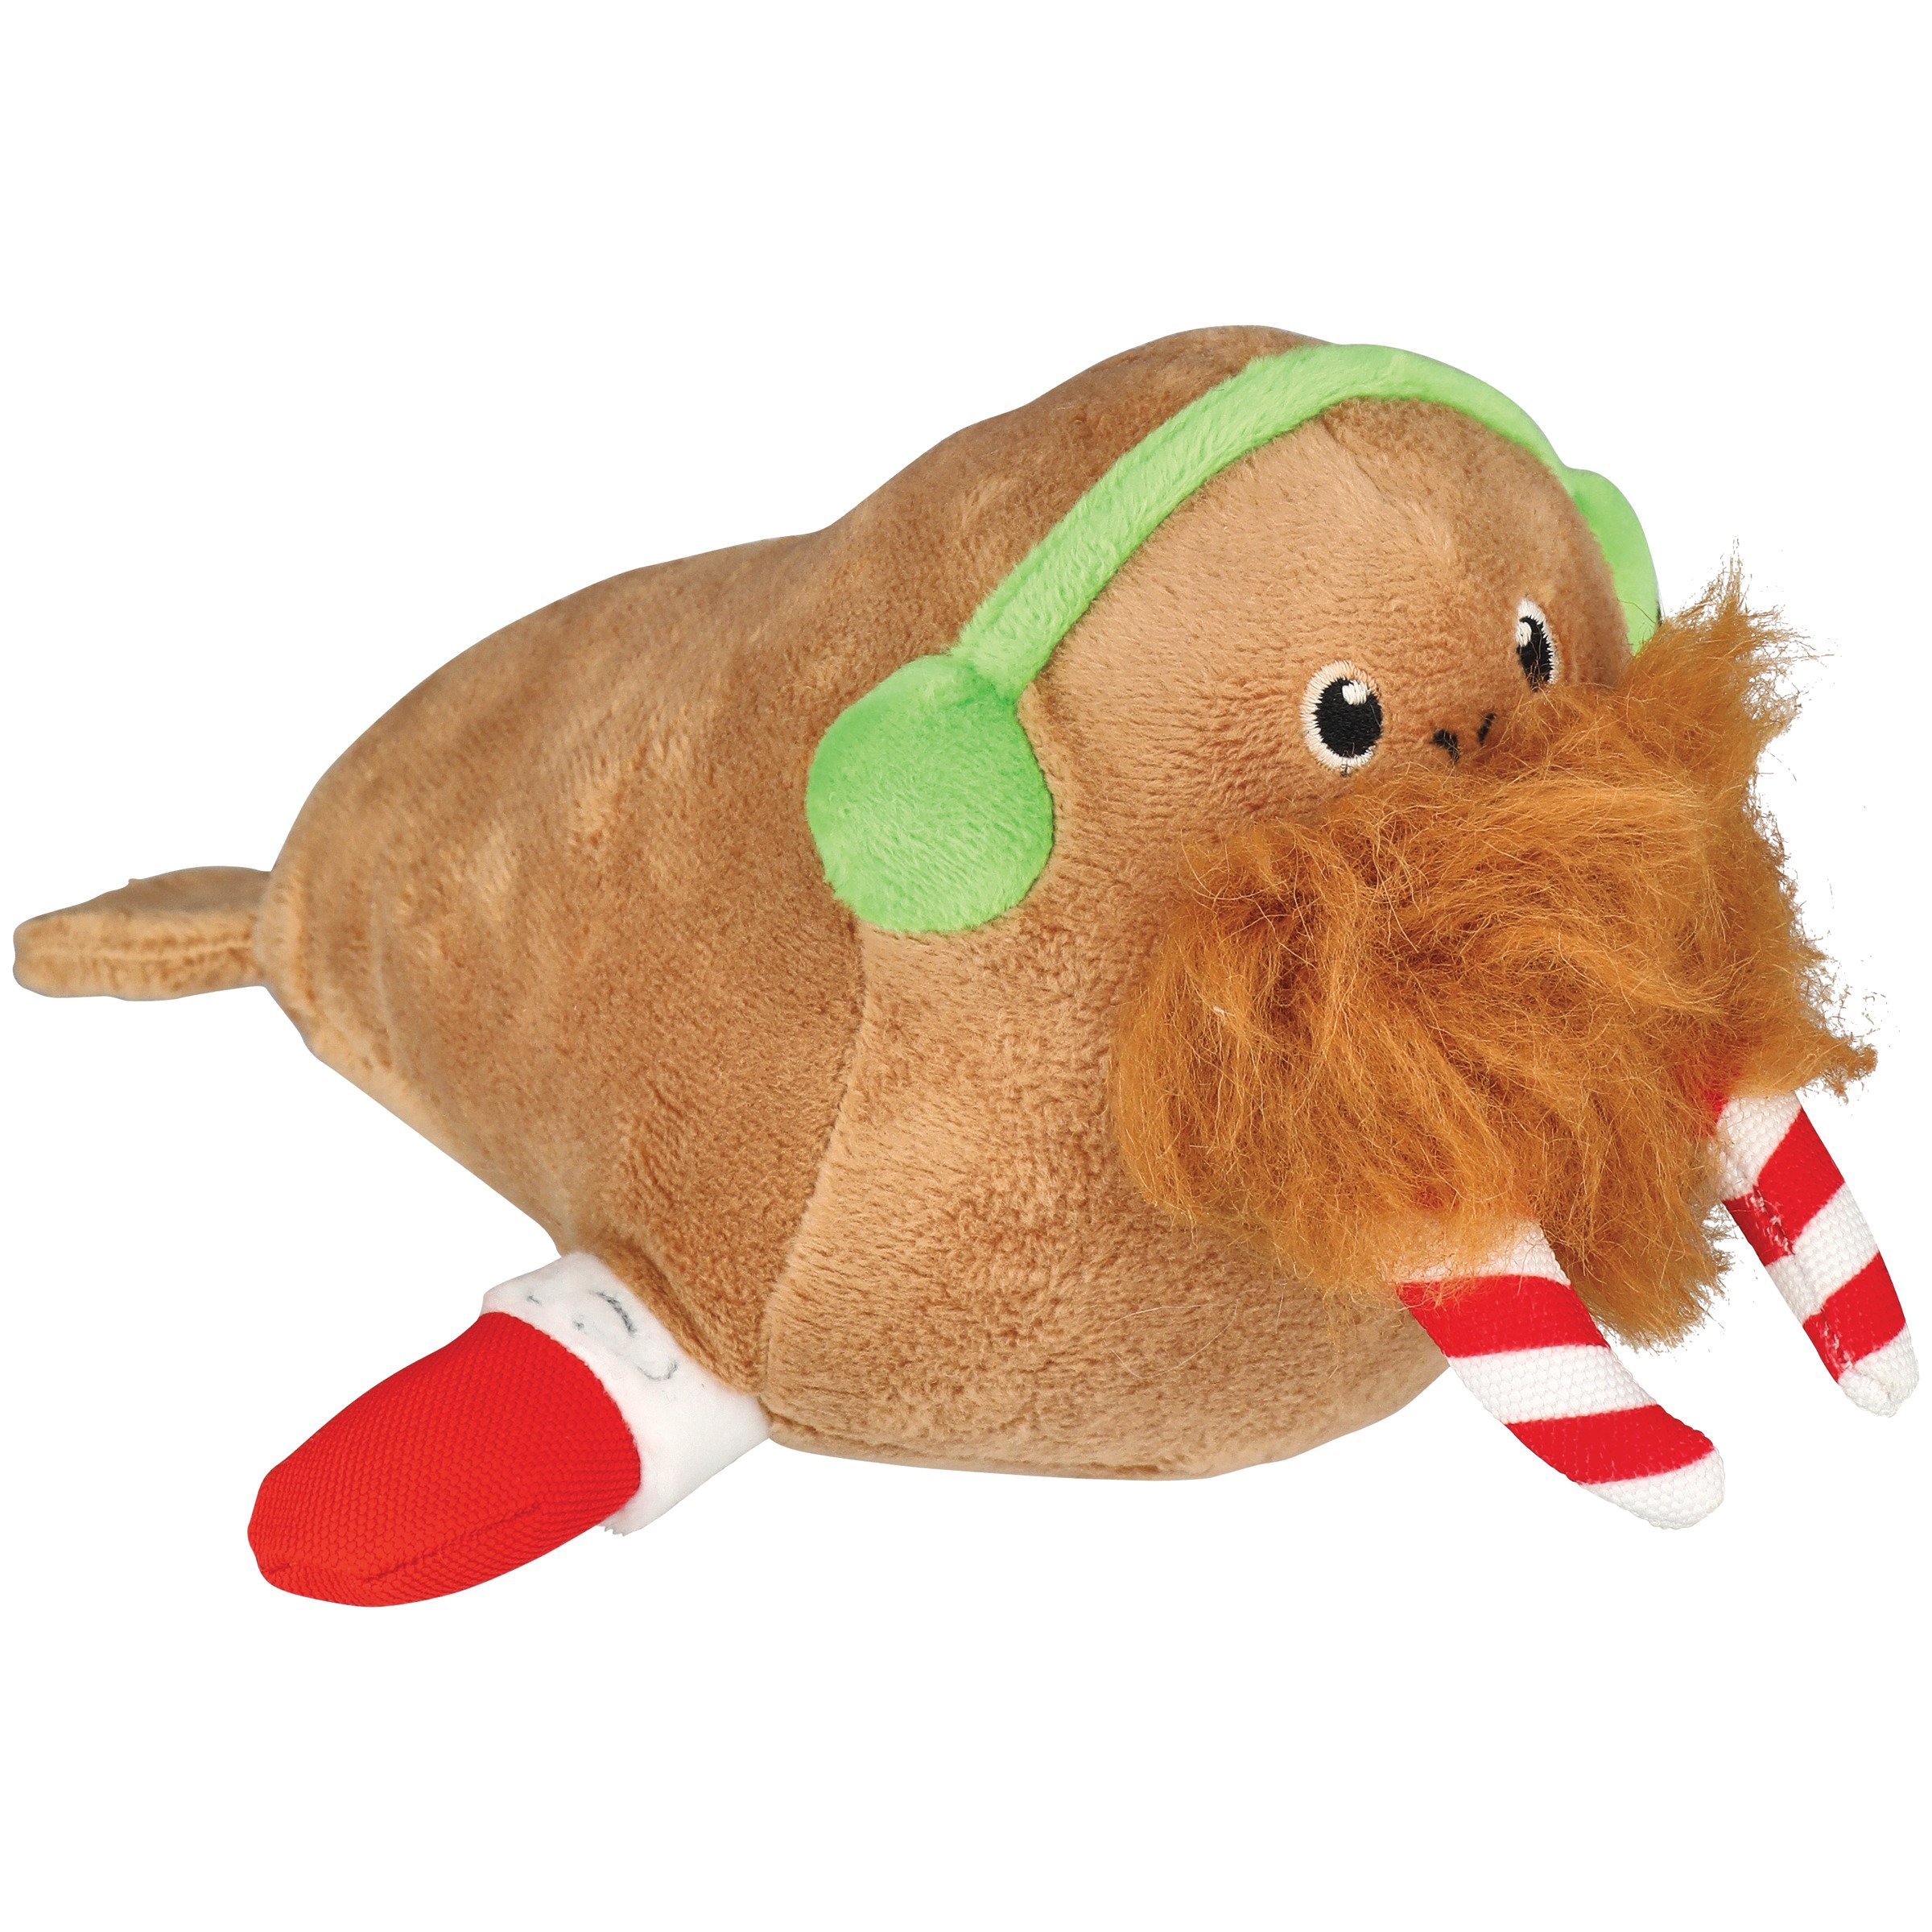 Woof & Whiskers Plush Dog Toy - Happy Yeti - Shop Plush Toys at H-E-B